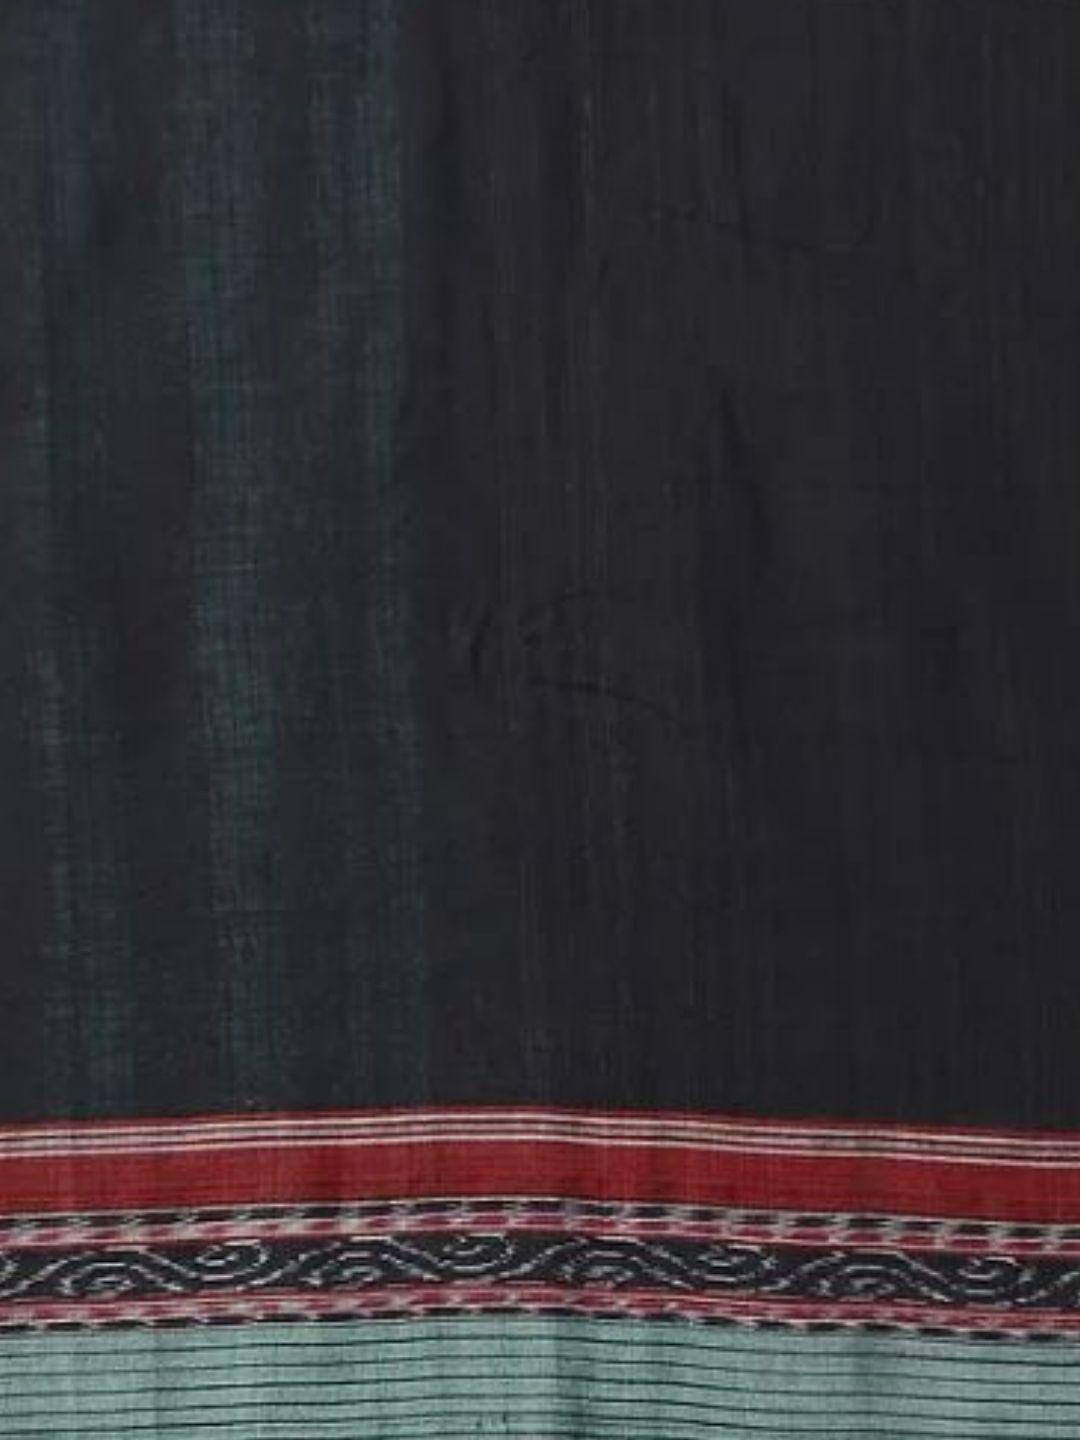 Green Cotton Odisha Sachipar Sambalpuri Saree - Crafts Collection